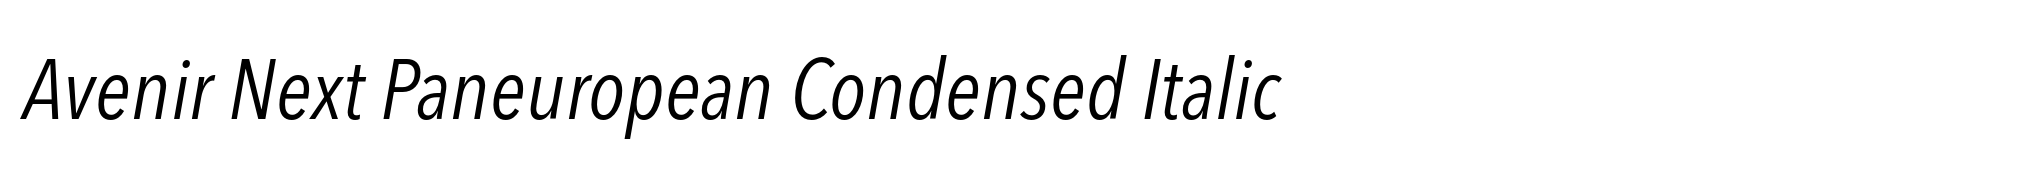 Avenir Next Paneuropean Condensed Italic image